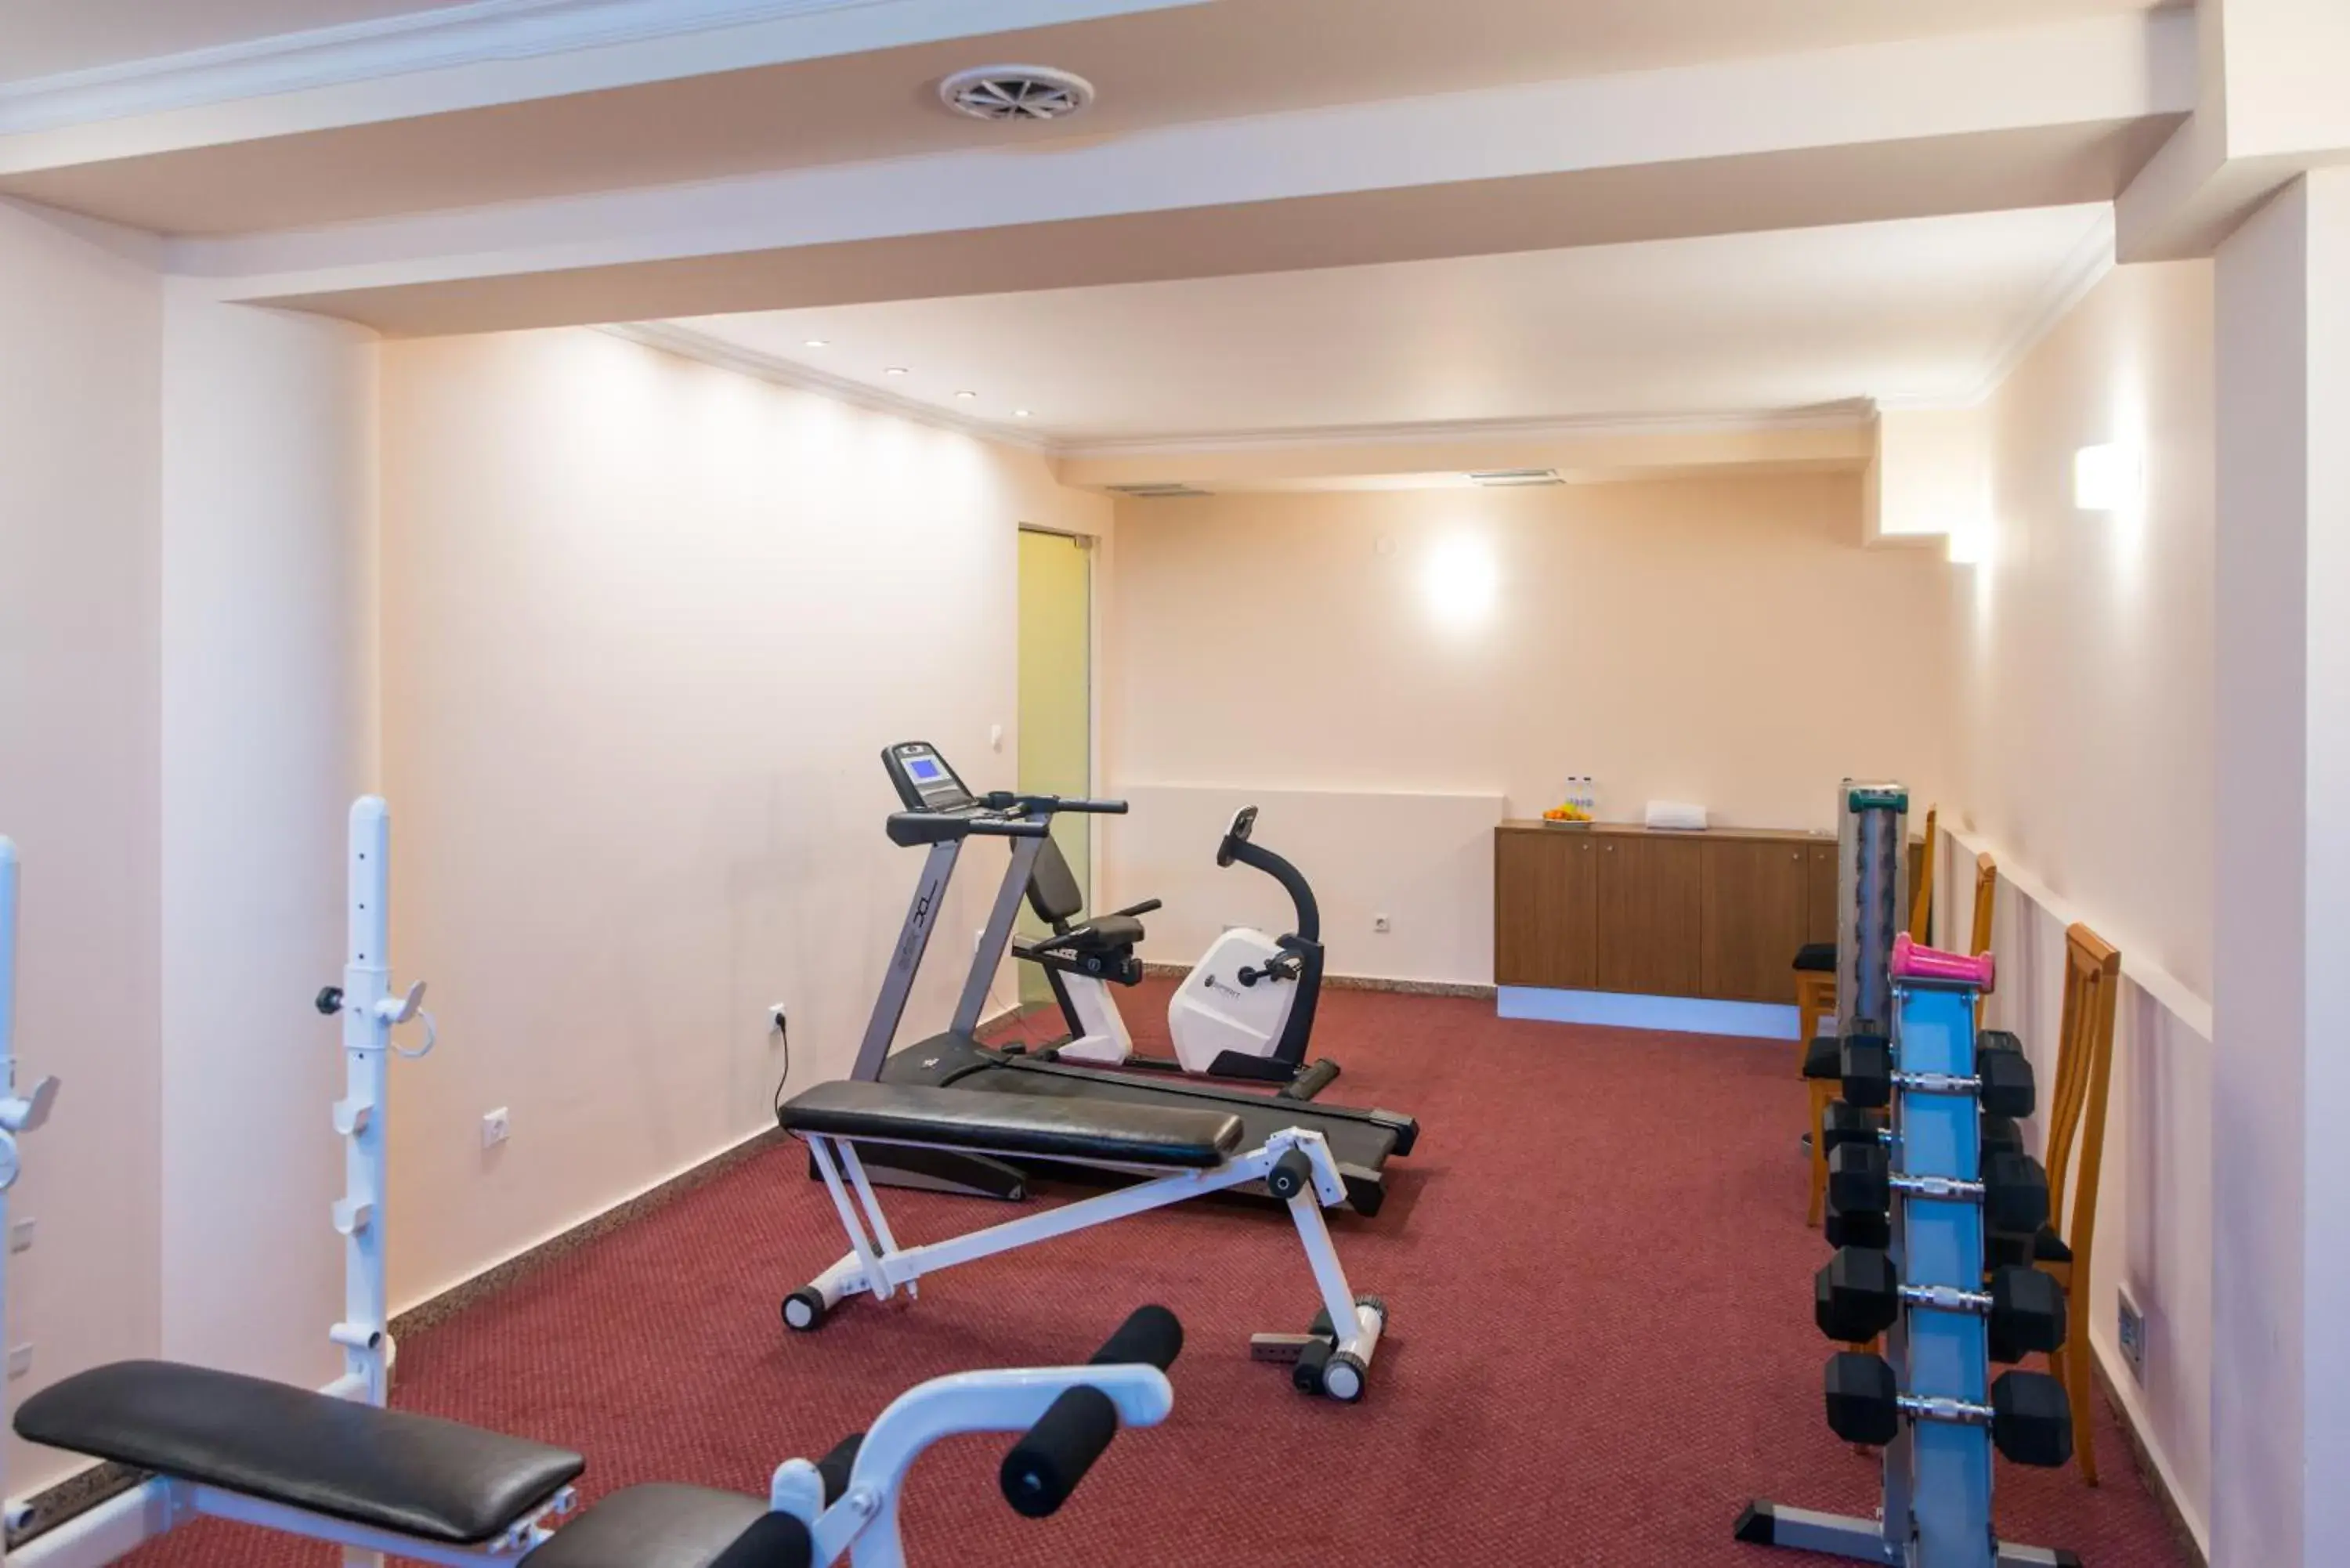 Fitness centre/facilities, Fitness Center/Facilities in Mediterranean Resort